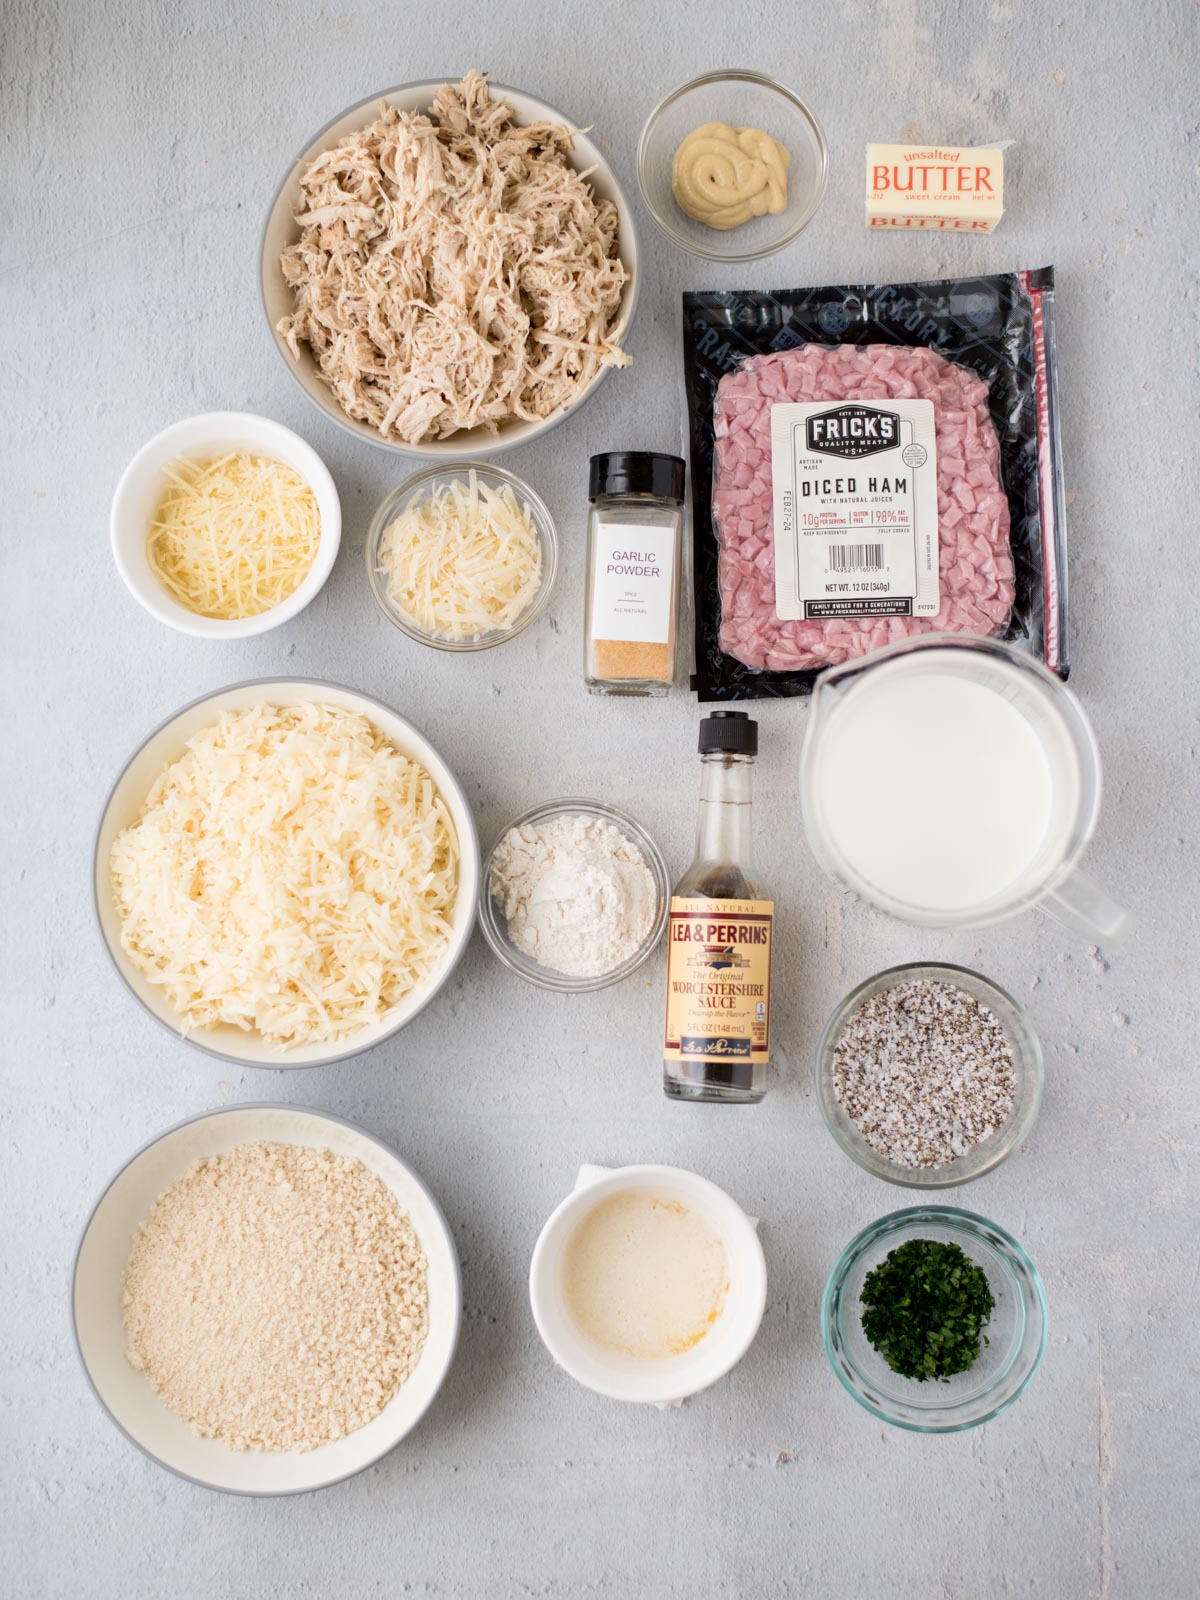 Ingredients to make chicken cordon bleu casserole